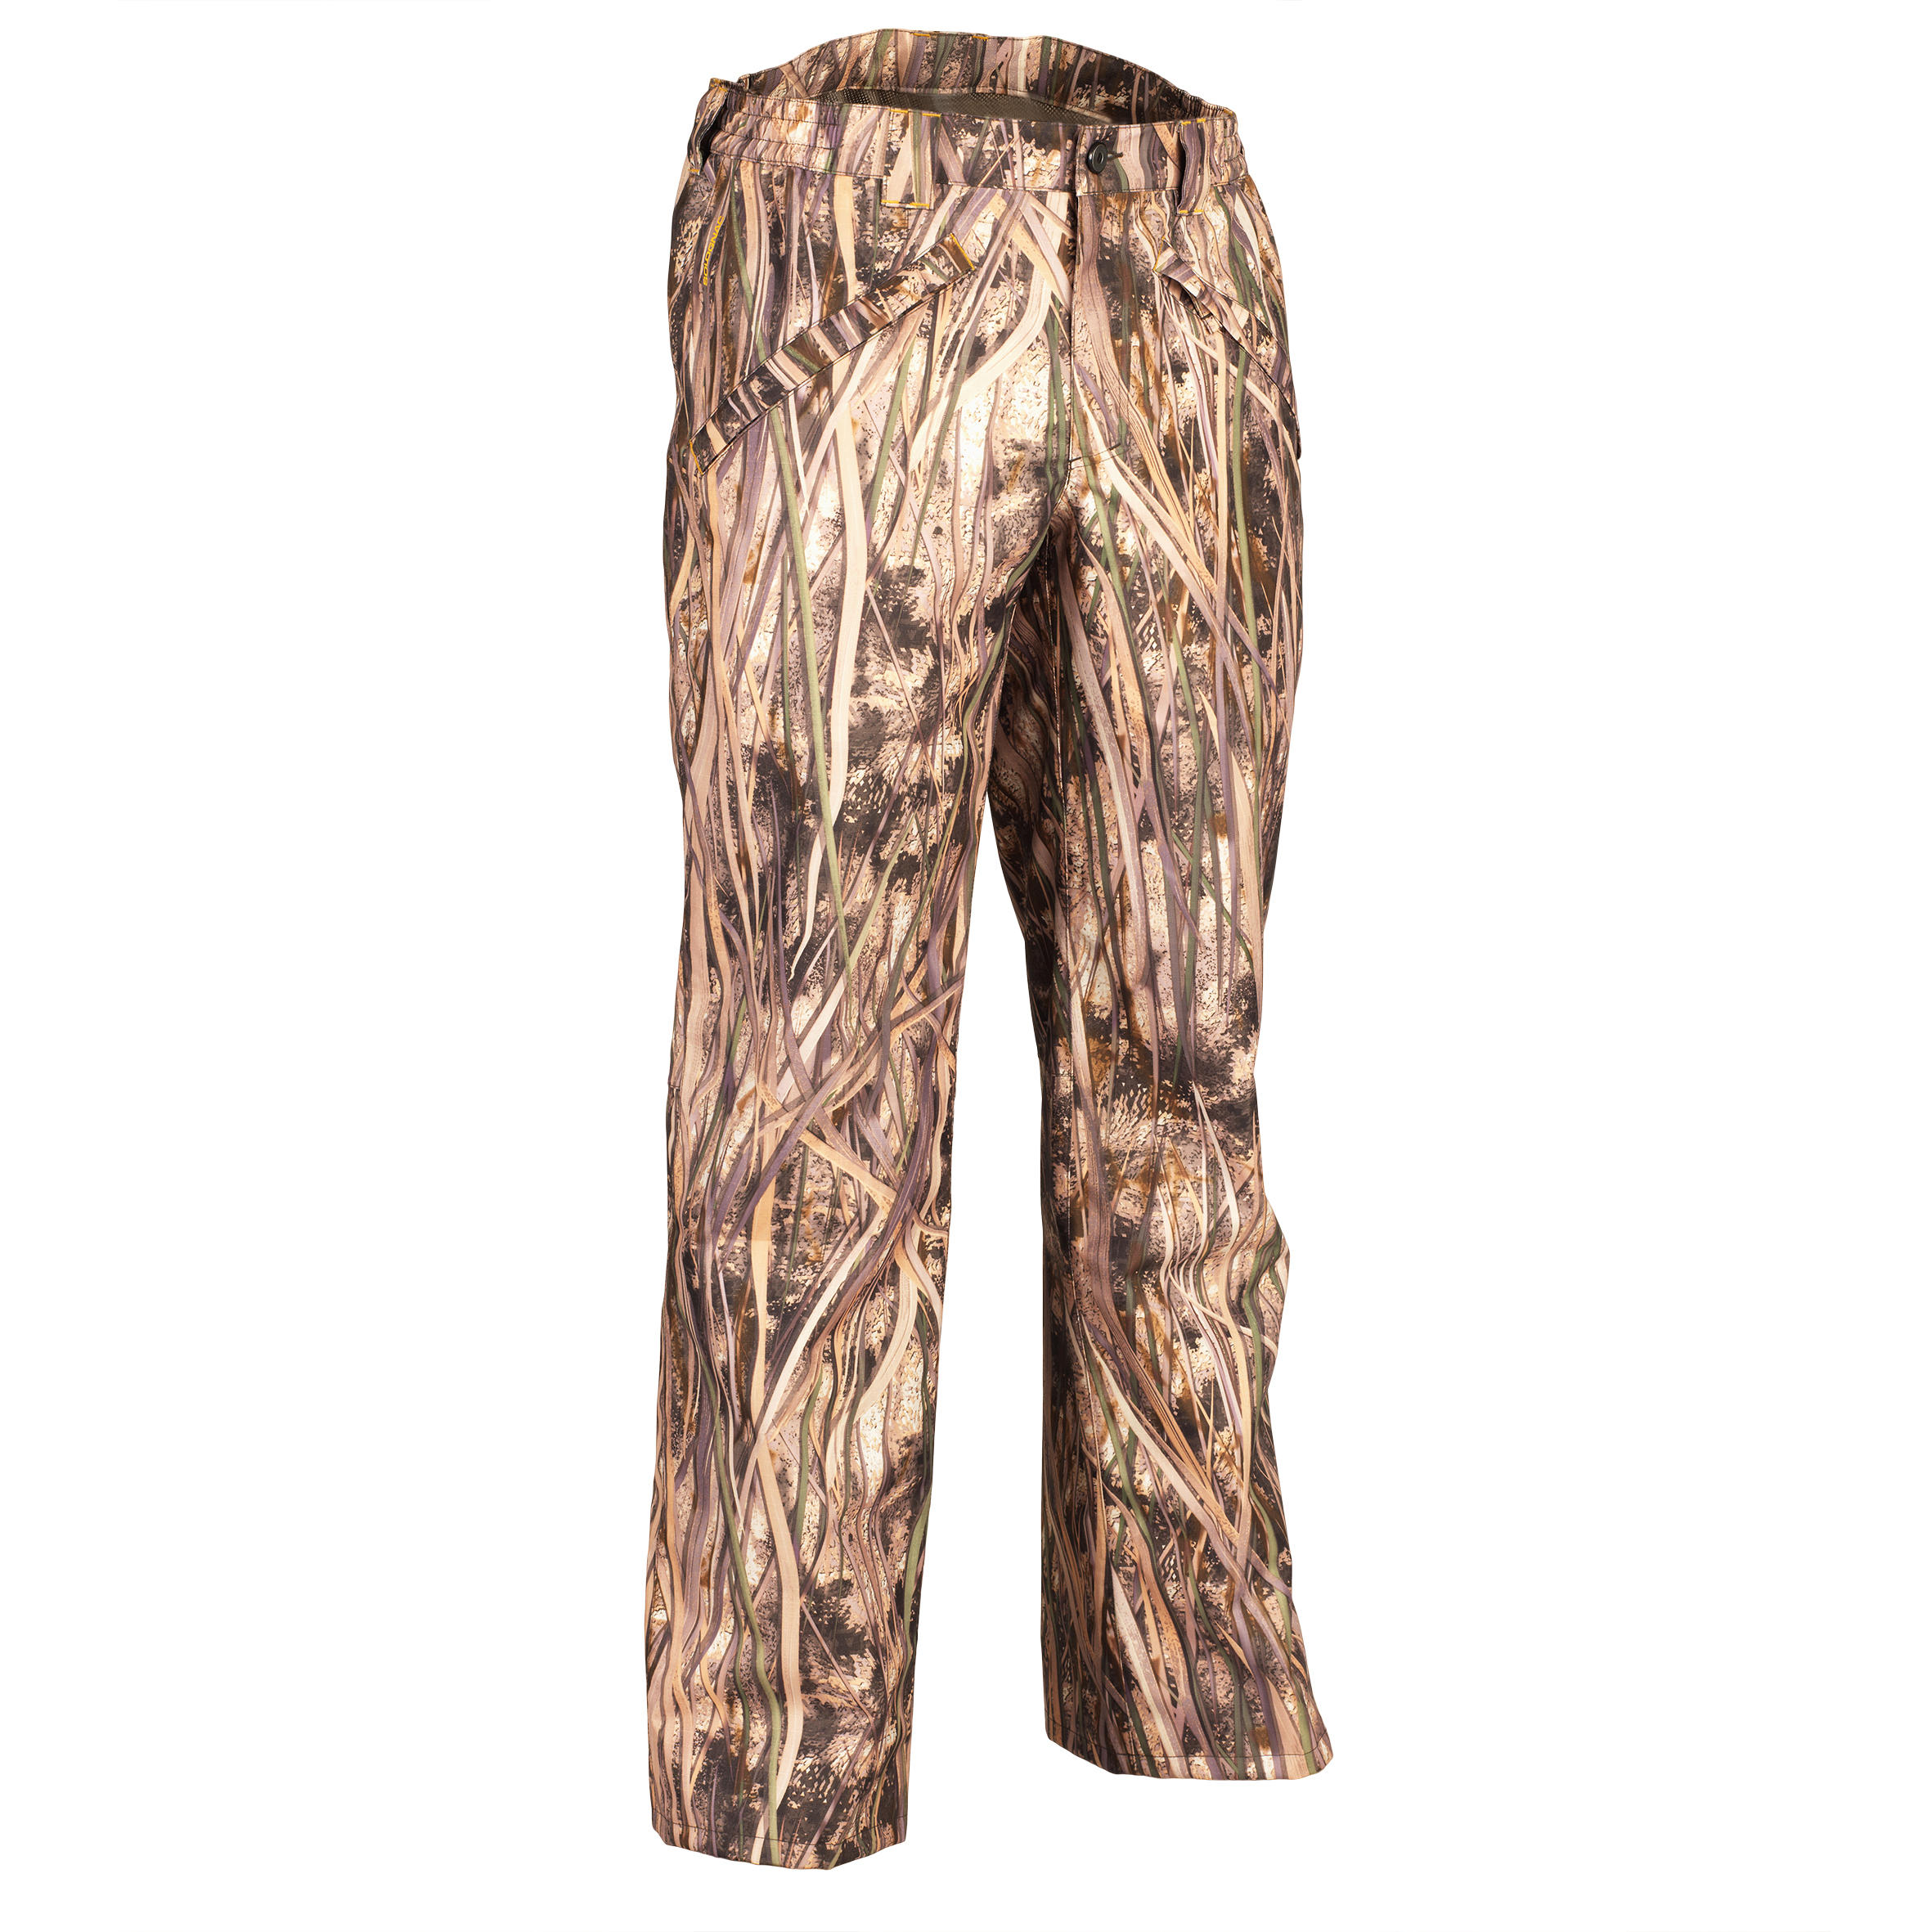 Pantalon impermeabil 100 Camuflaj bărbați La Oferta Online decathlon imagine La Oferta Online